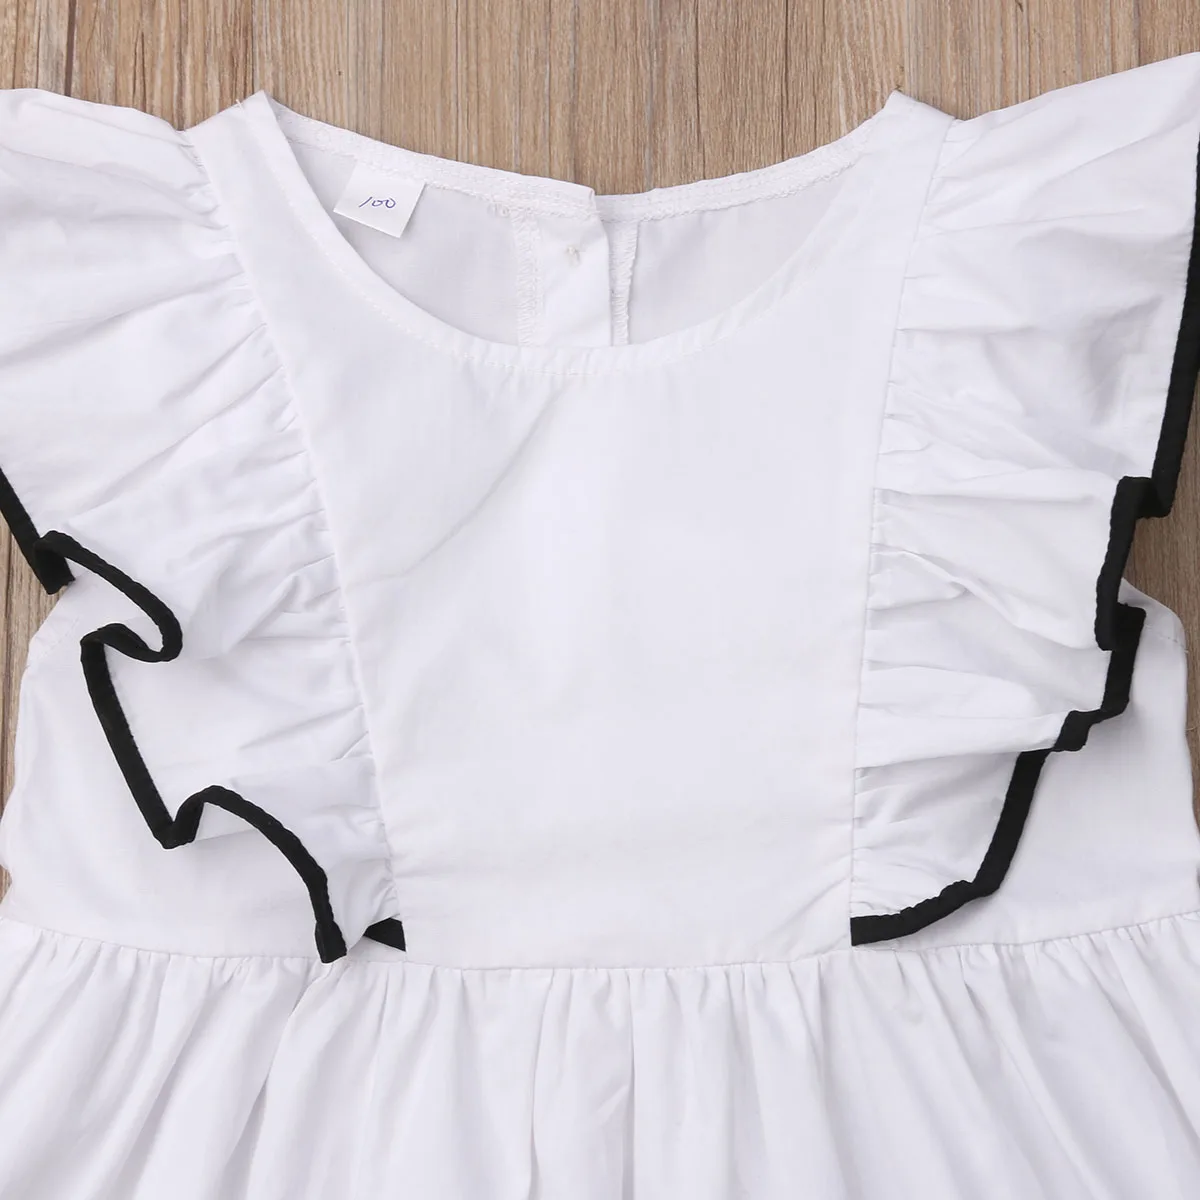 Pudcoco/Белое платье для маленьких девочек; одежда для маленьких девочек; платья с оборками; праздничное платье принцессы; летнее платье-пачка